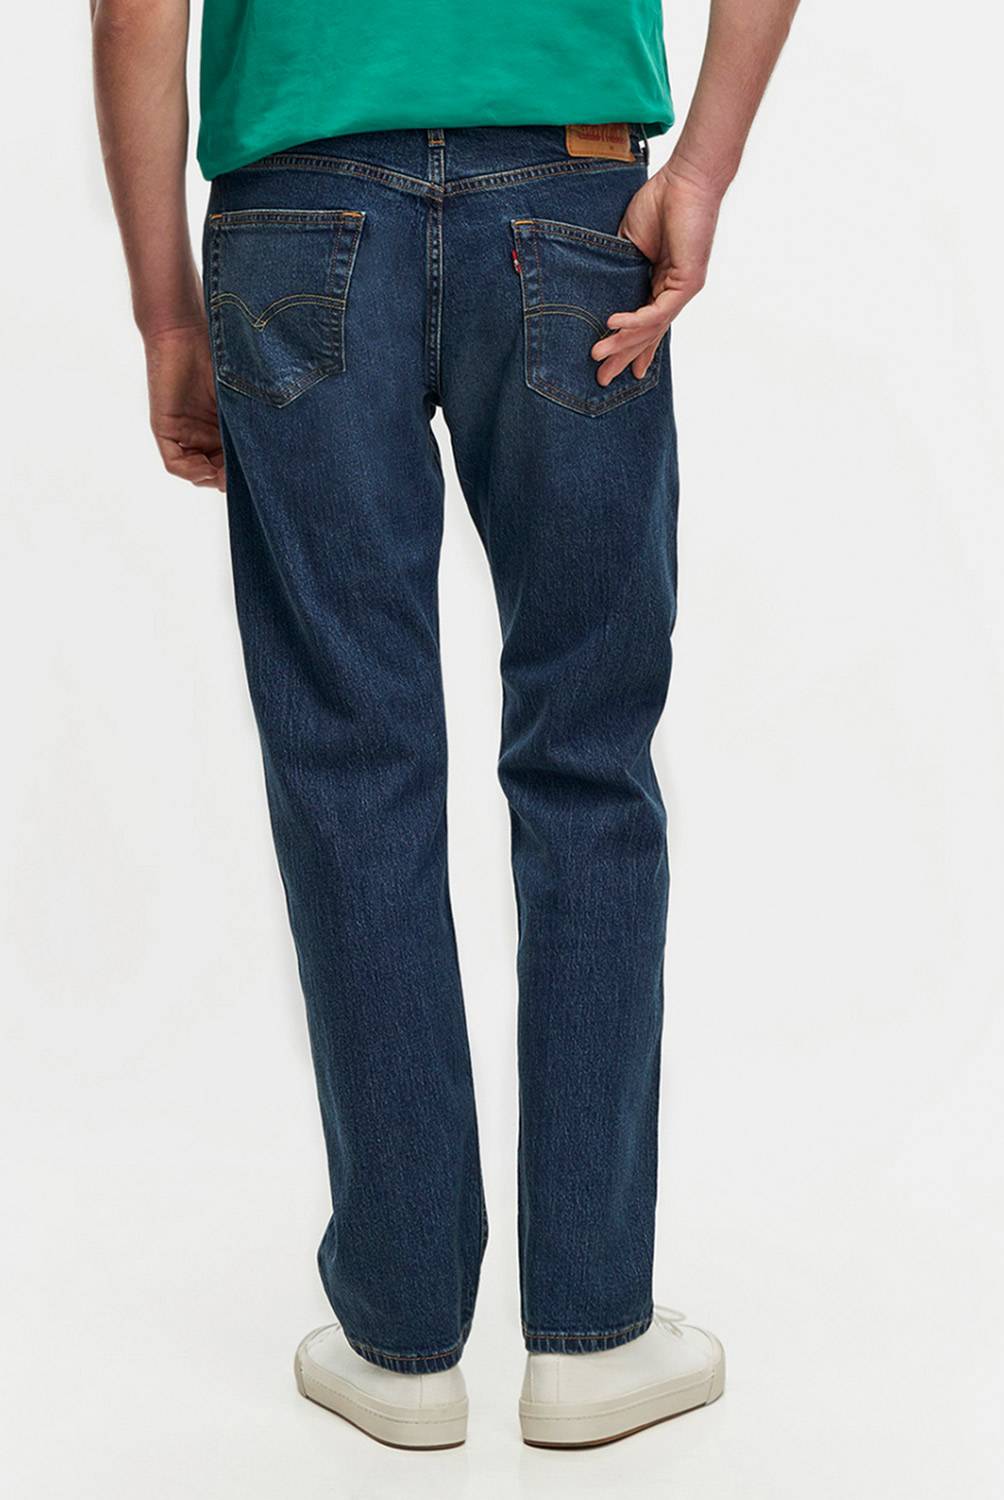 LEVIS - Levis Jeans Regular Fit Algodón Hombre